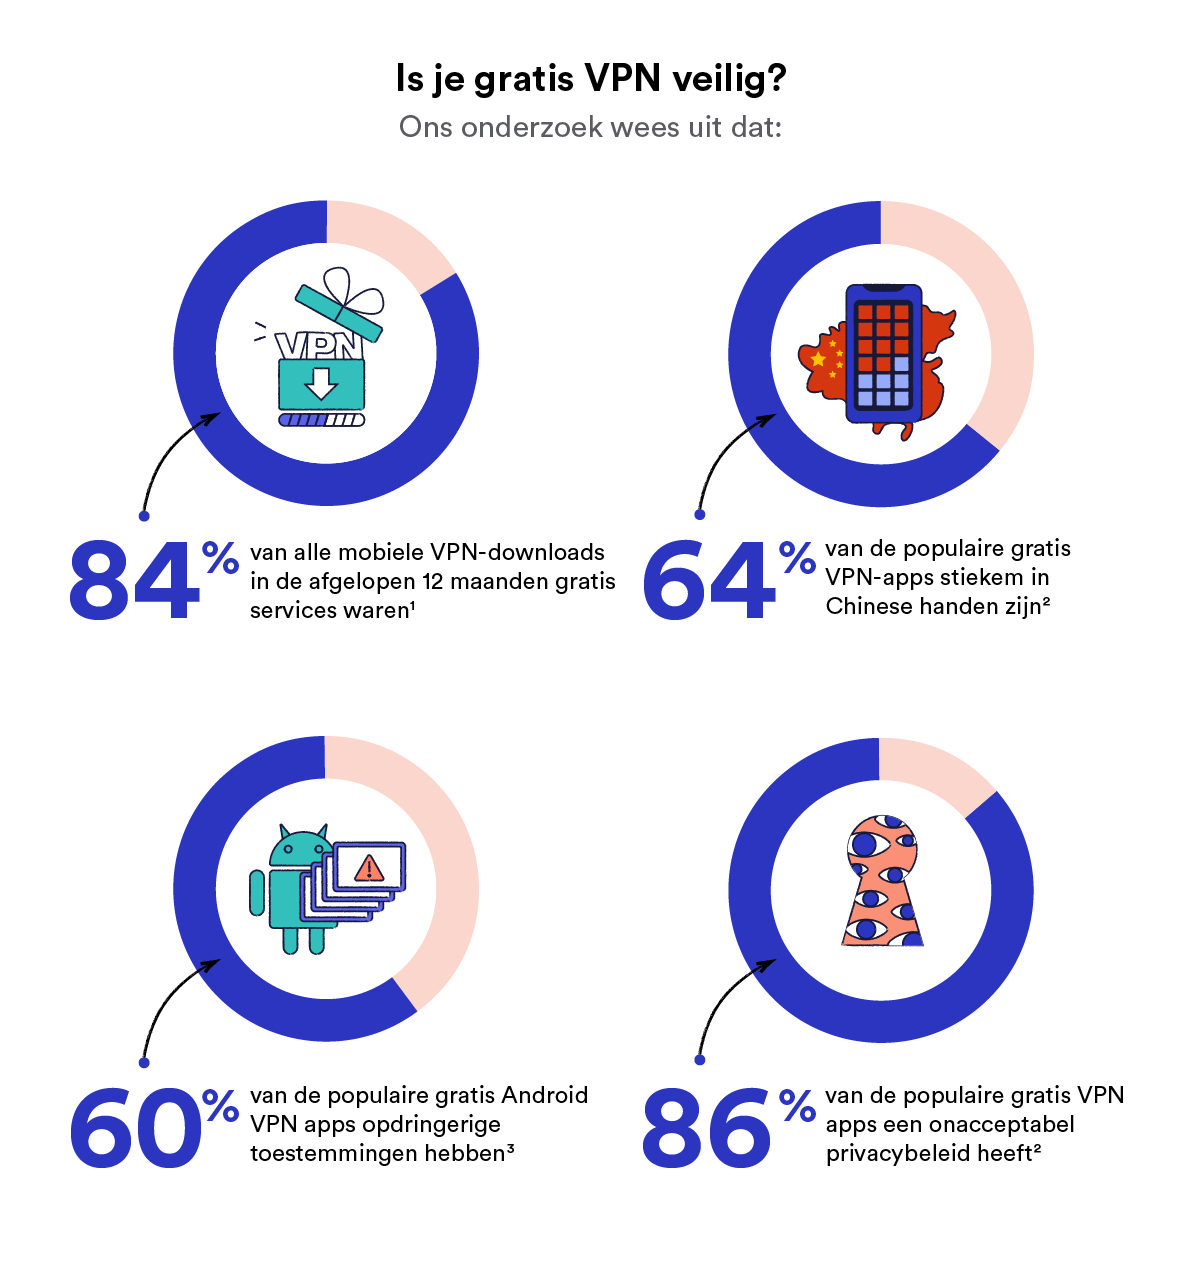 De risico's en gevaren van het gebruik van gratis VPN's